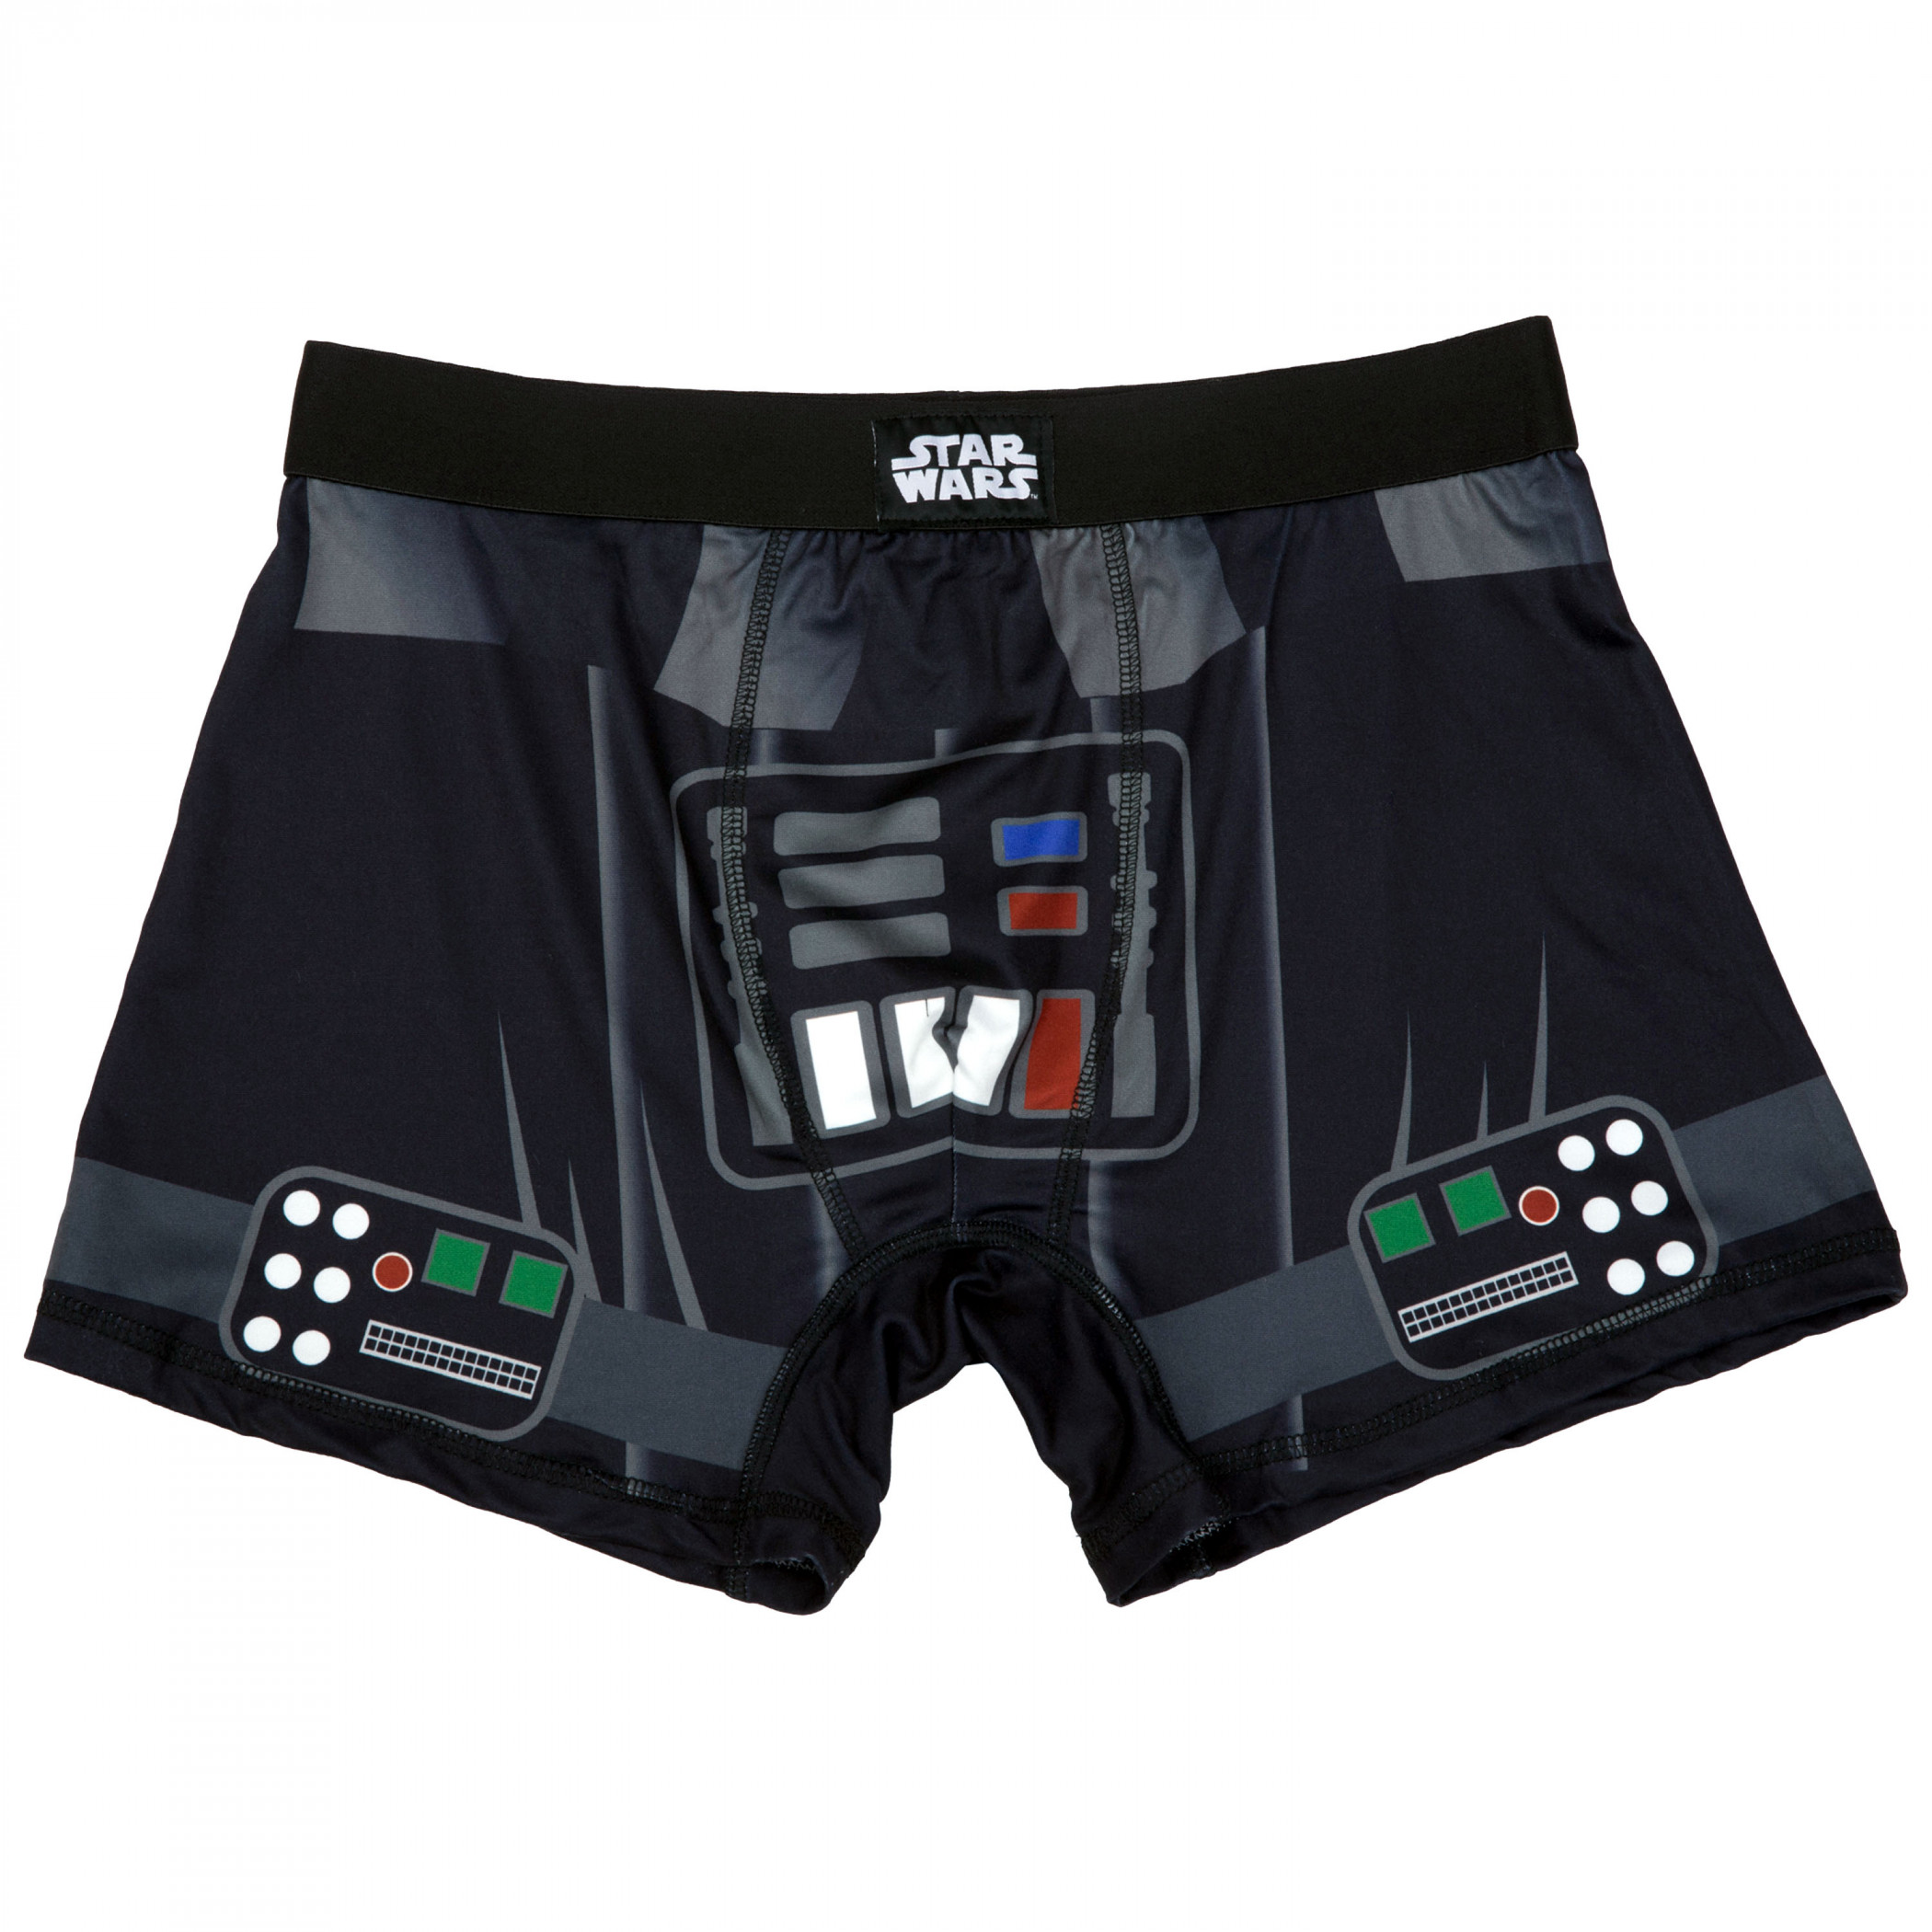 Star Wars Darth Vader Cosplay Men's Underwear Boxer Briefs Black